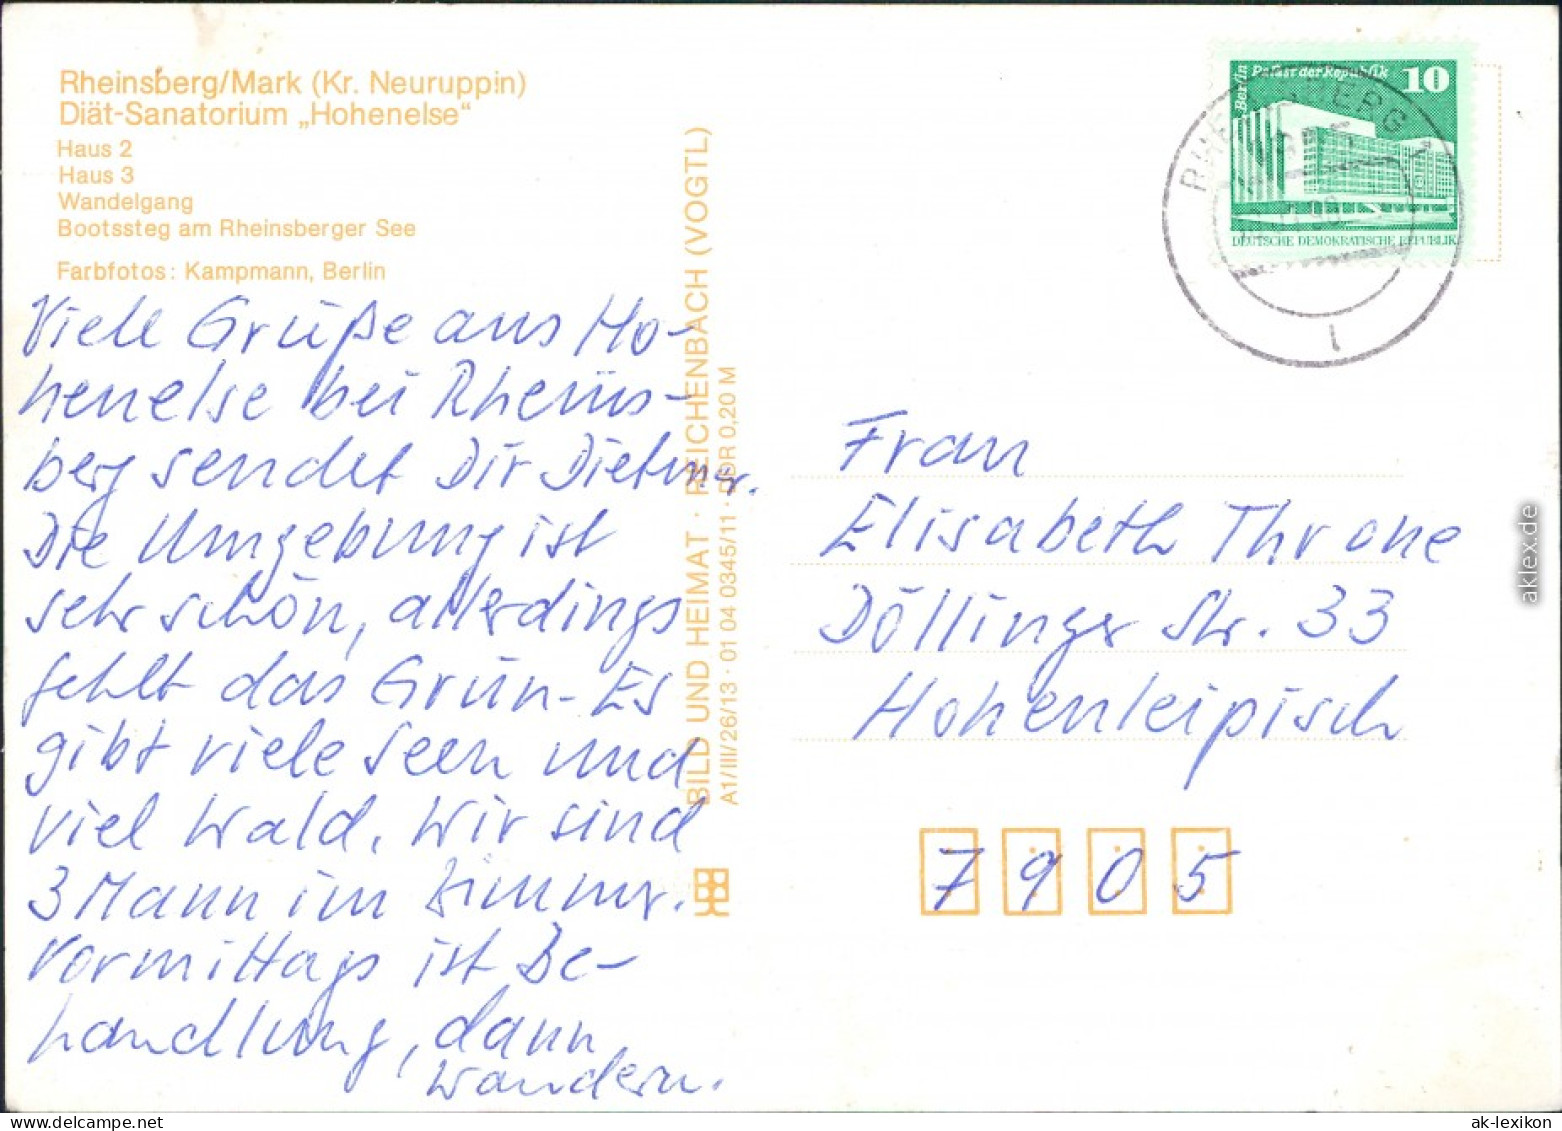 Rheinsberg Diät-Sanatorium "Hohenelse", Haus 2, Haus 3, Wandelgang  1983 - Rheinsberg